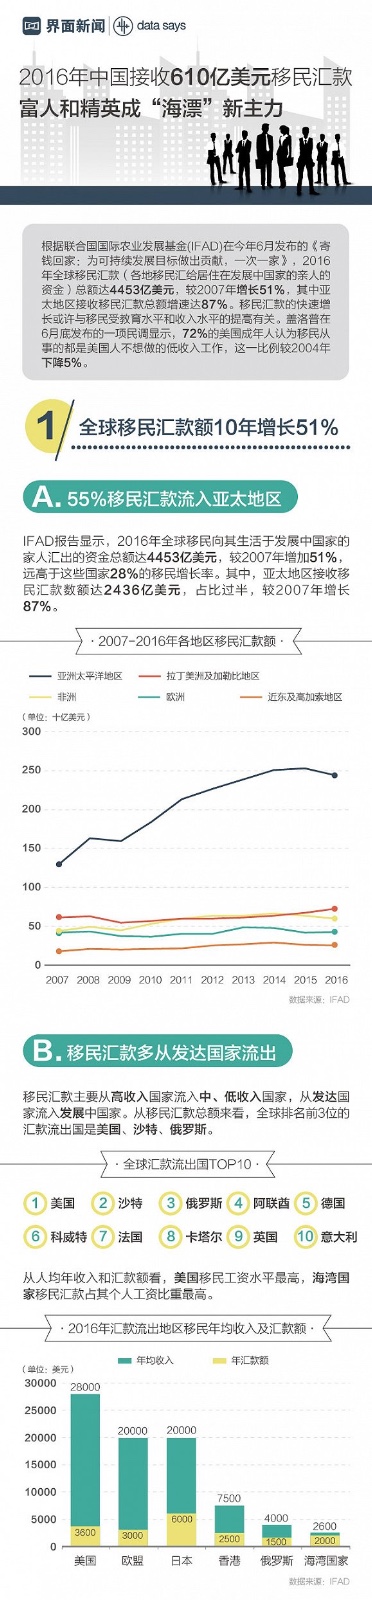 2016年中国接收610亿美元移民汇款 富人和精英成新主力